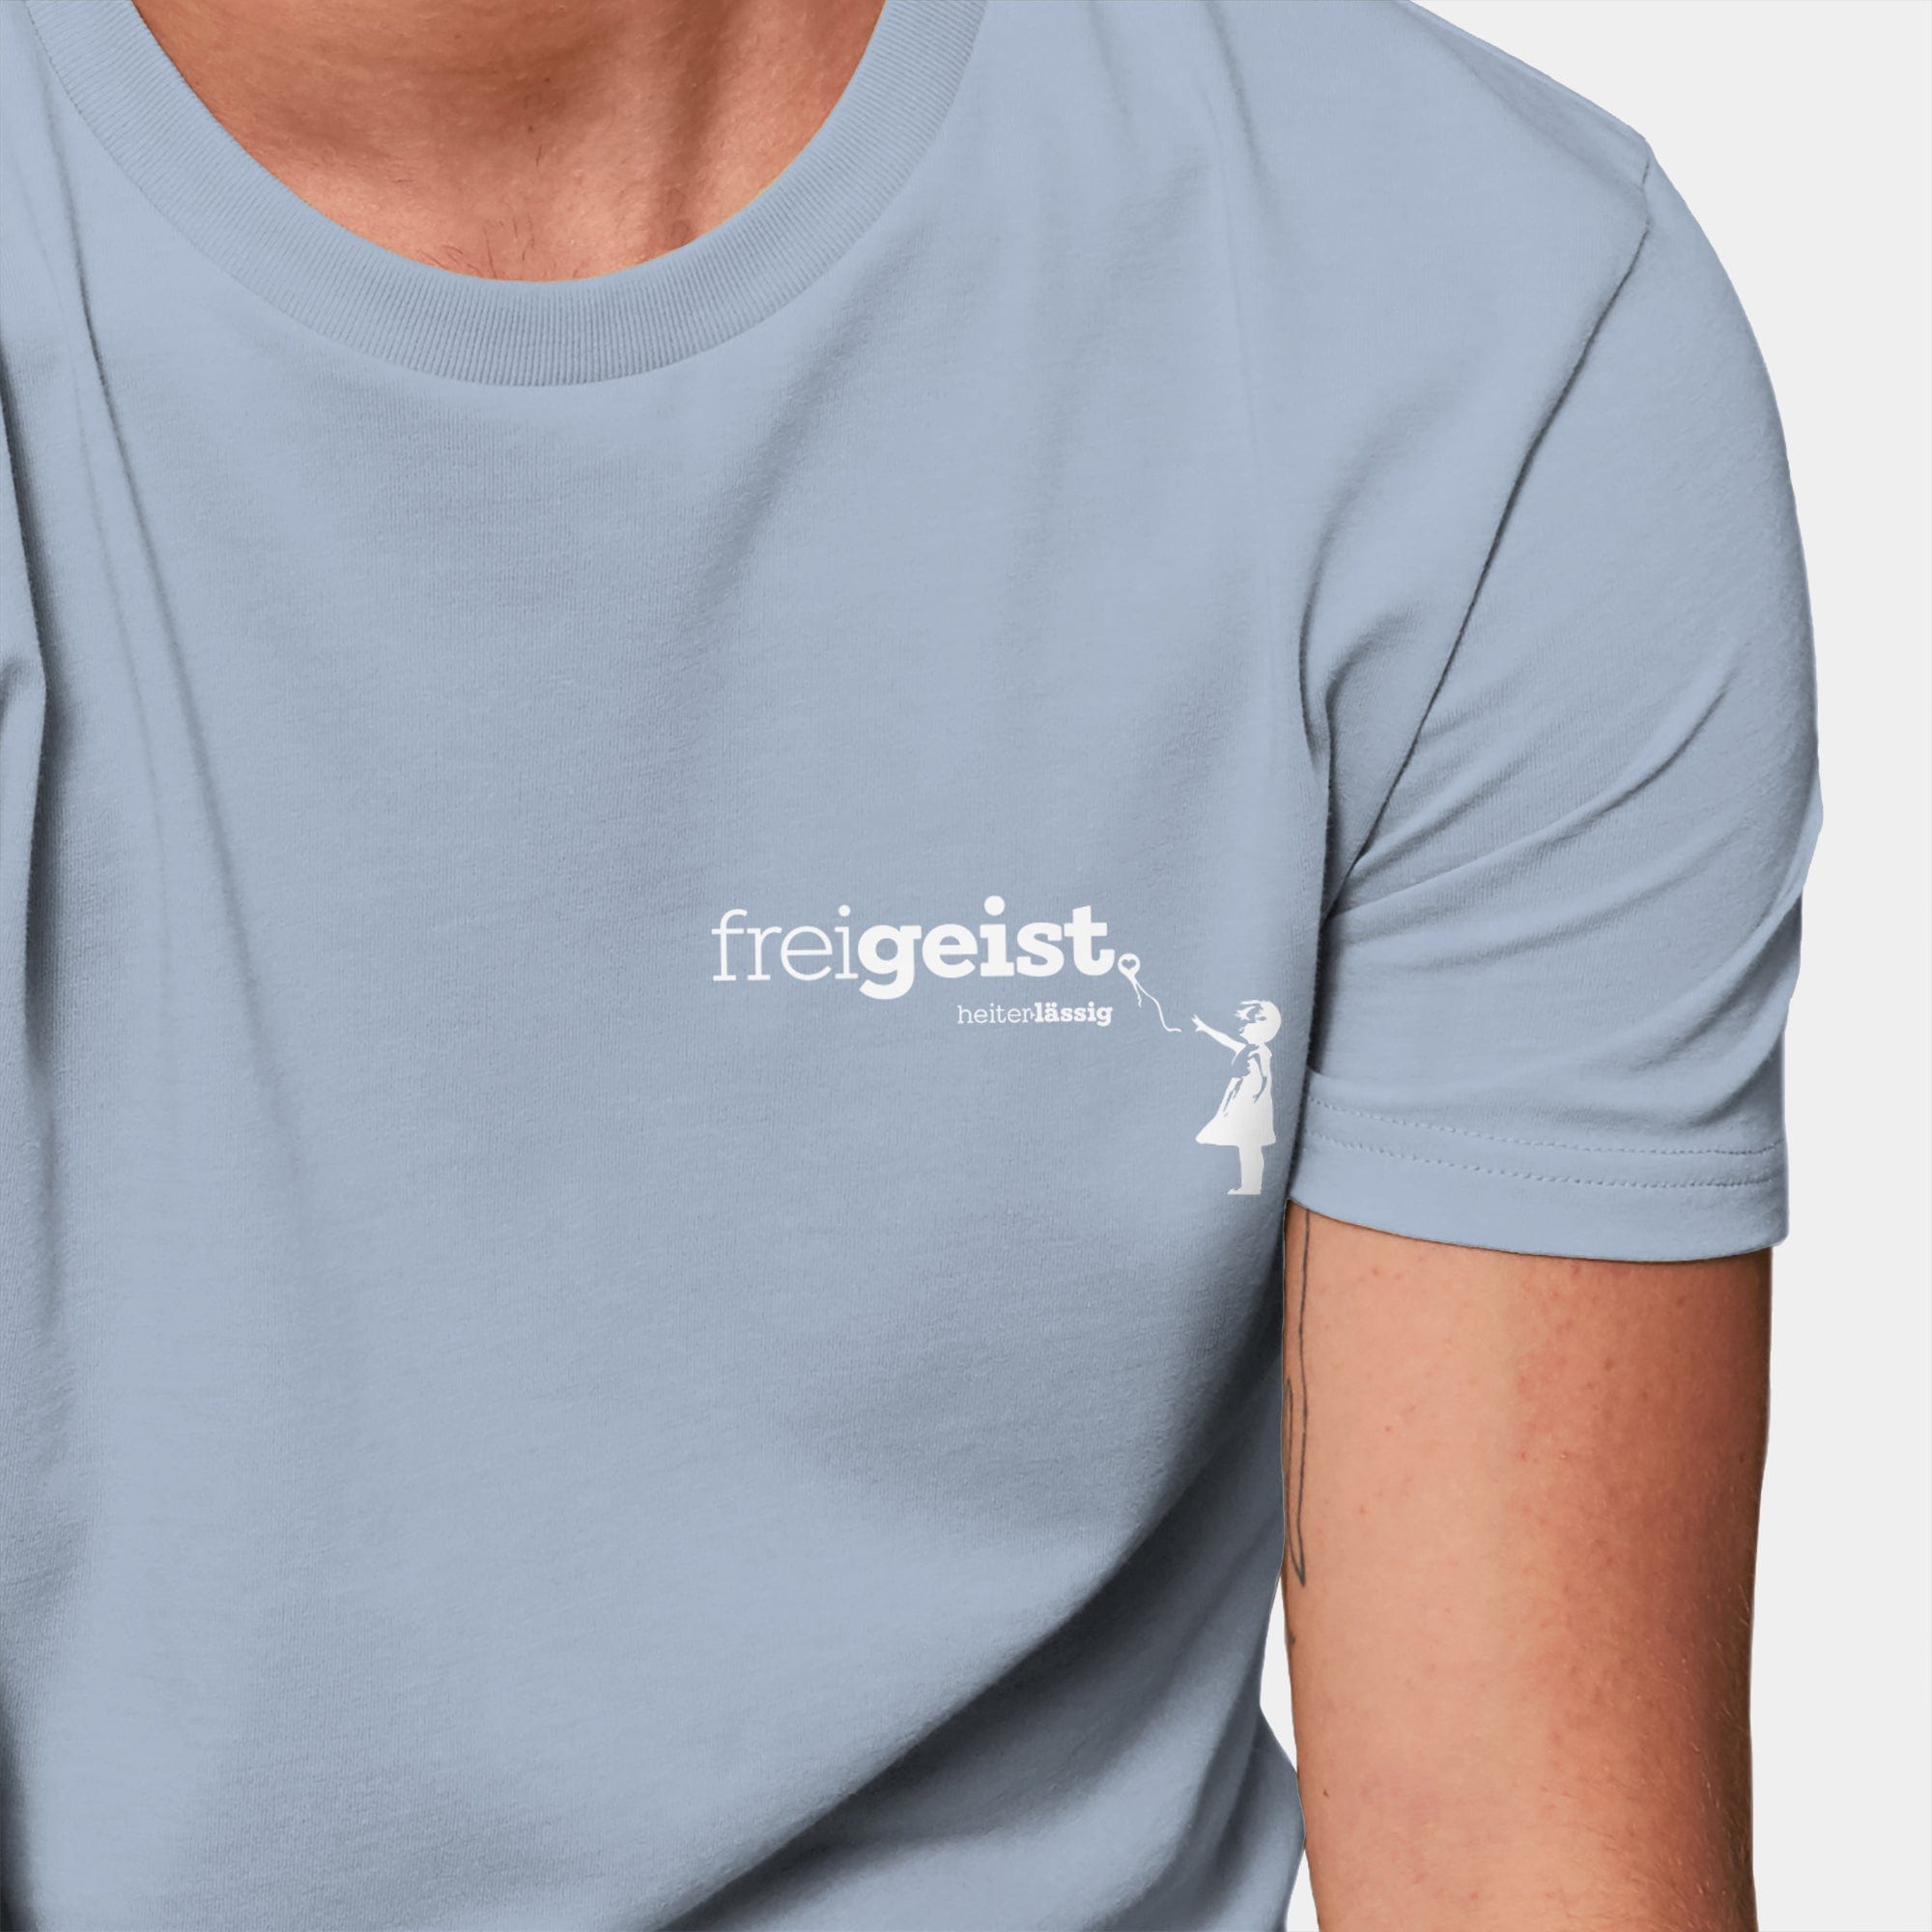 HEITER & LÄSSIG T-Shirt ORIGINAL "freigeist" - aus nachhaltiger und fairer Produktion